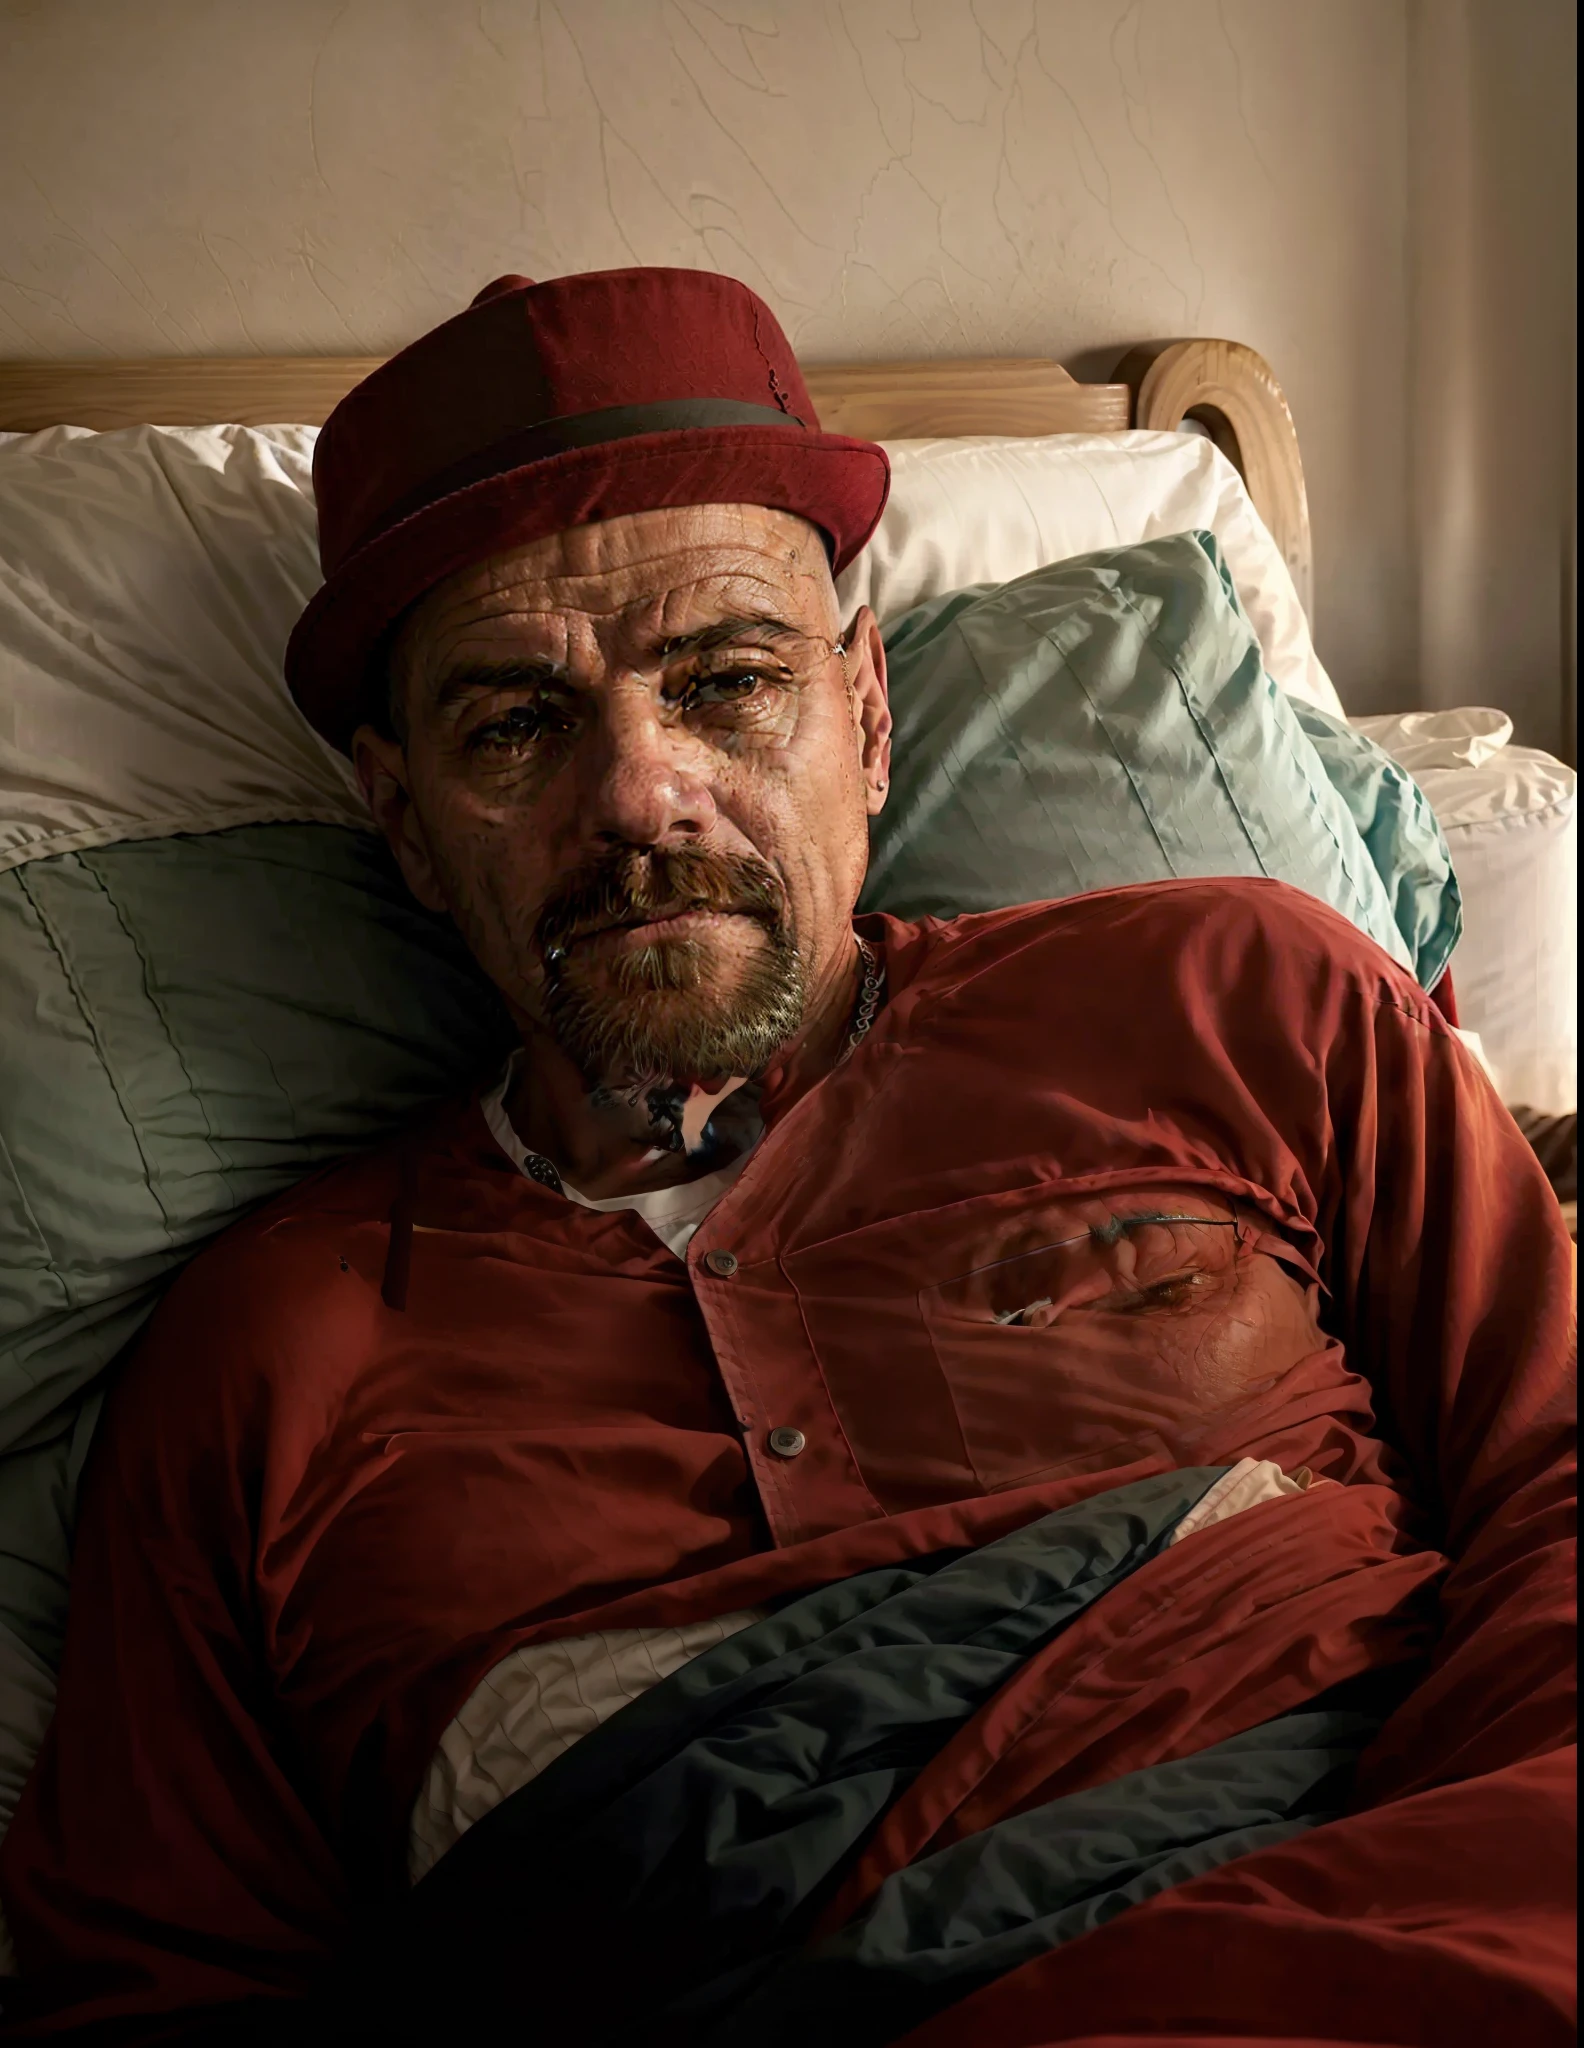 빨간 모자를 쓴 남자가 침대에 누워 있어요, 4 0세 남성, (38세), 안드레스 리오스, 호나우두 루이스 나자리오 데 리마, 약 3~5세, 엘로이모랄레스, 5 0세 남성, 현실적인 사진, 45세 남성, 빅터 마리스탄, 카멜로 블란디노